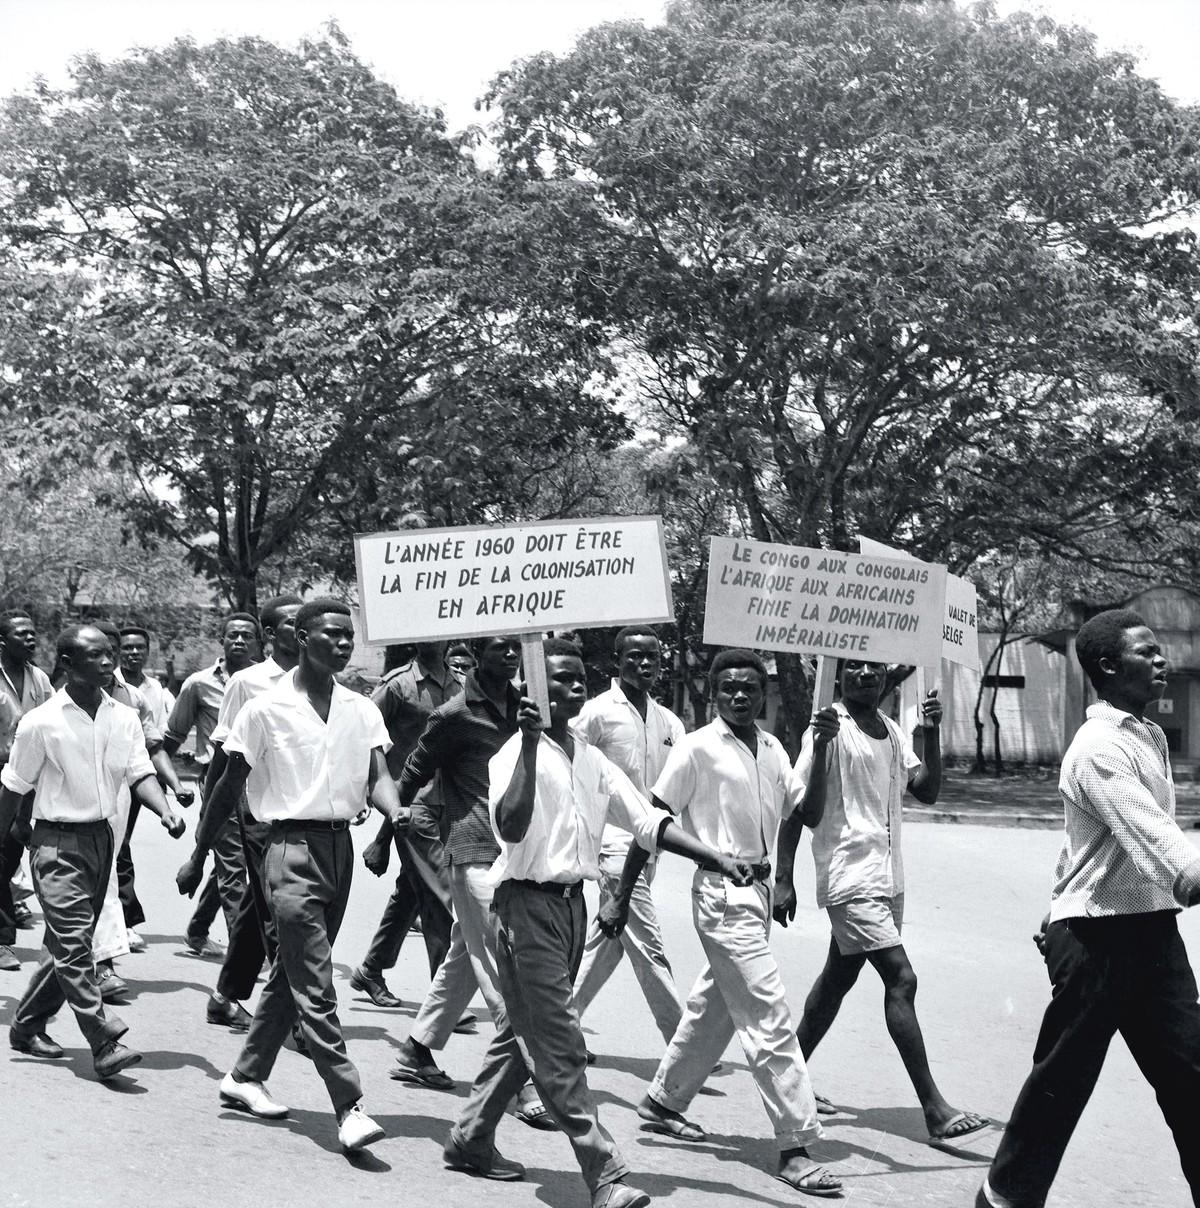 Manifestation à Léopoldville au moment de l'accession à l'indépendance, juillet 1960 (Congo Belge).